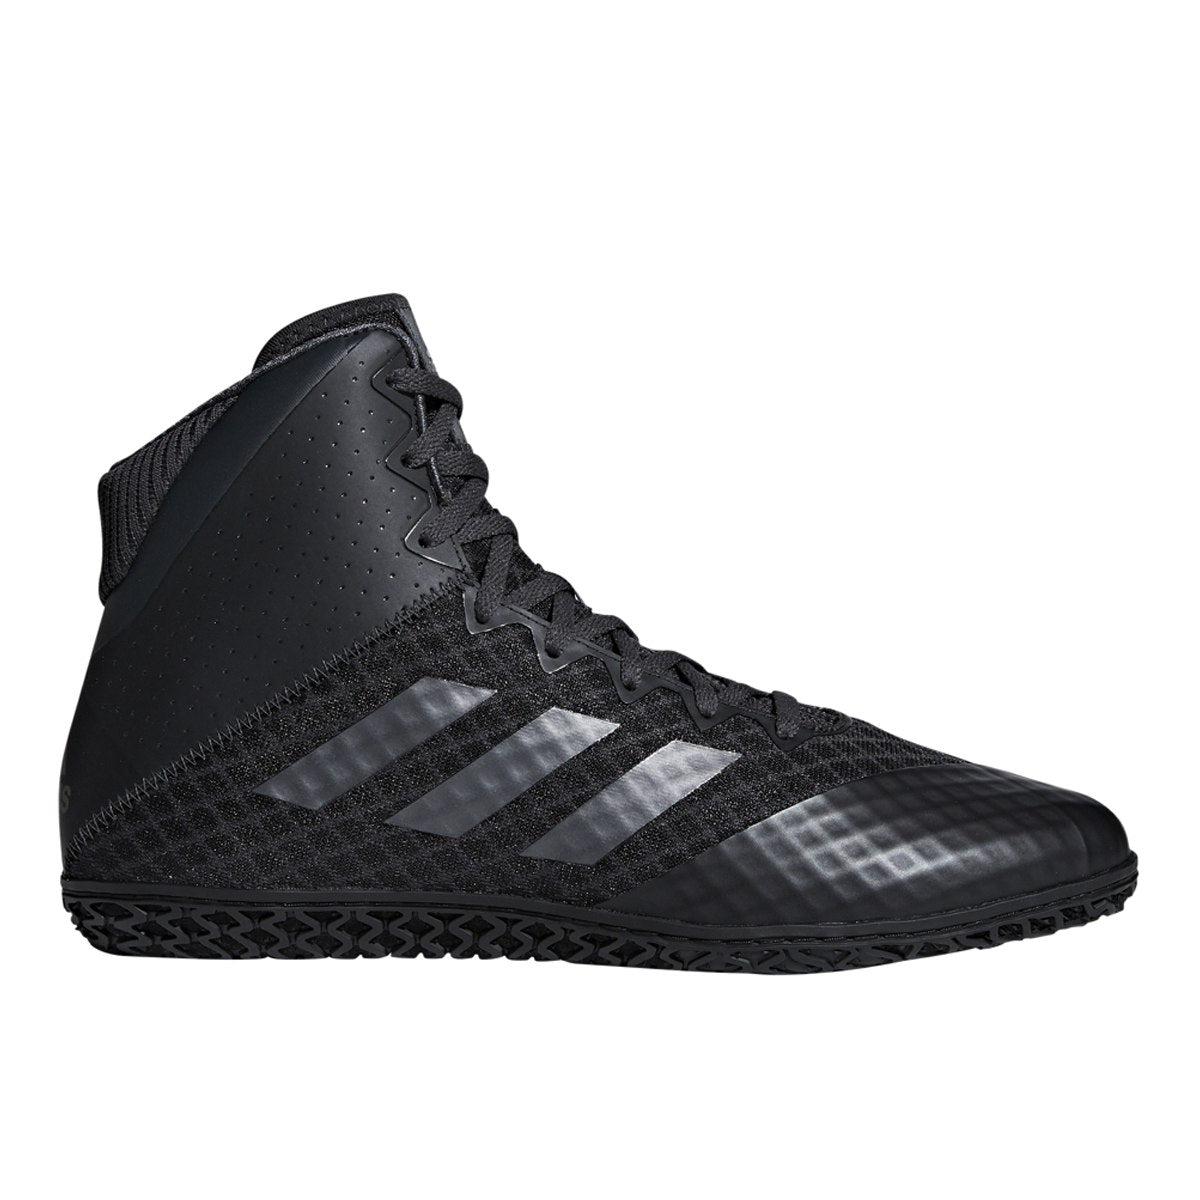 Adidas Wrestlingschuhe Mat Wizard 4. - schwarz carbon, AC6971